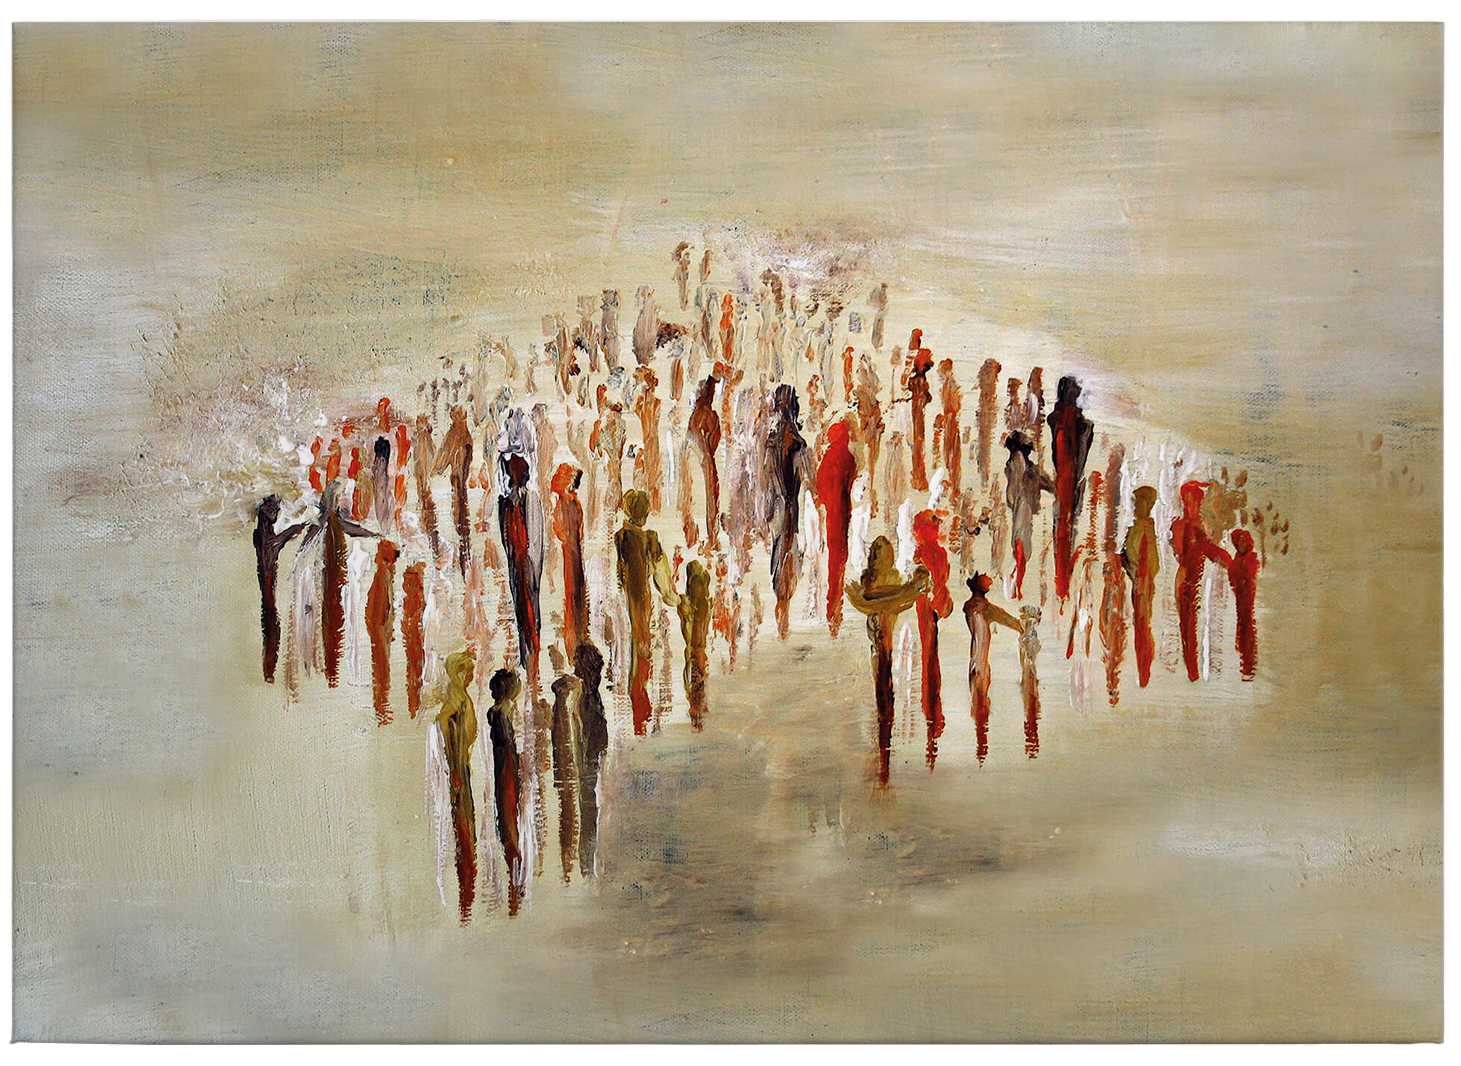             Leinwandbild Kunst von Melz "People 02" – 0,70 m x 0,50 m
        